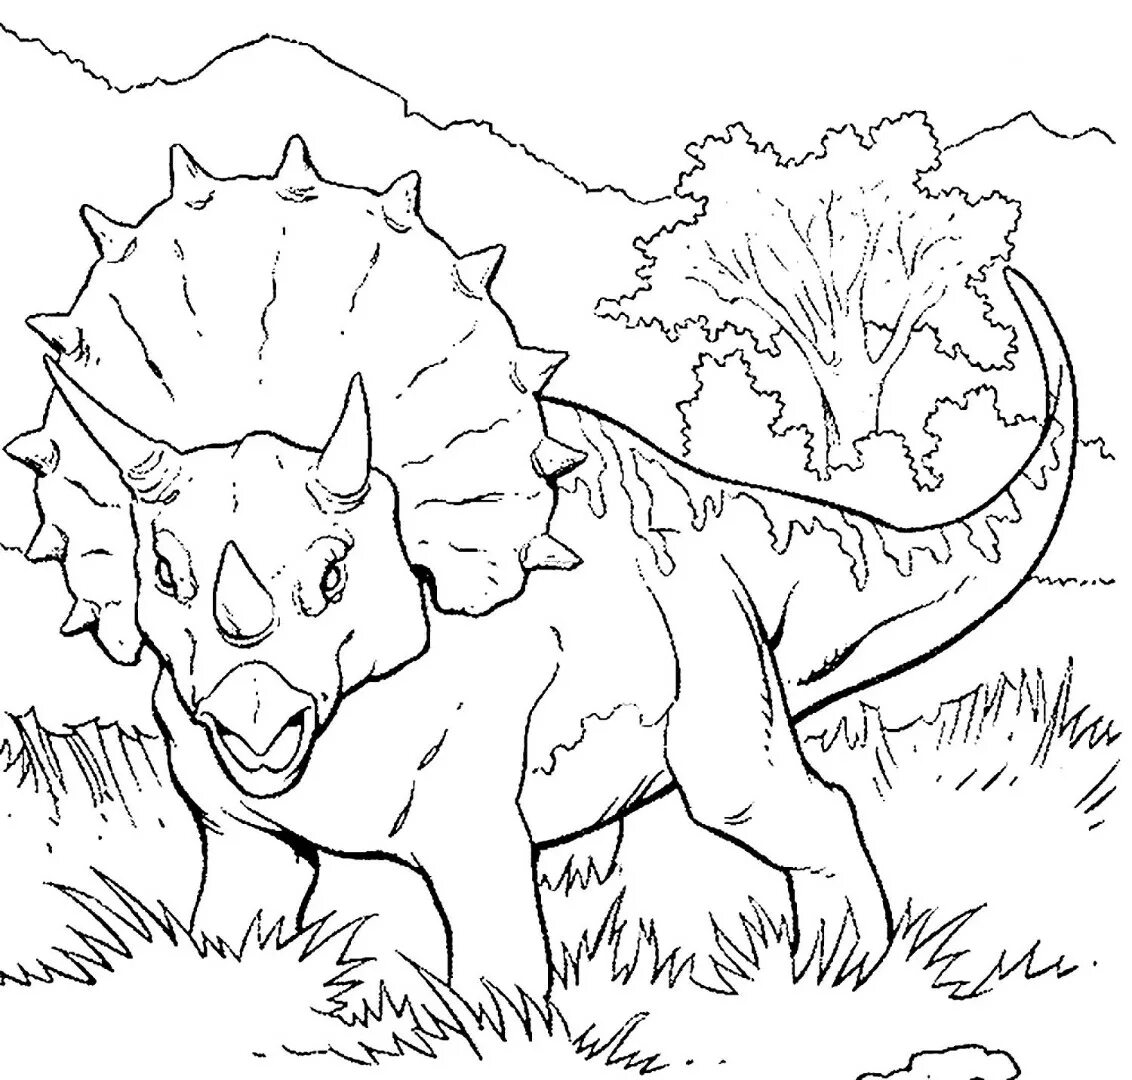 Раскраска динозавр формат а4. Раскраска динозавры мир Юрского периода Трицератопс. Динозавр Трицератопс раскраска для детей. Трицератопс парк Юрского периода. Динозавр раскраска для детей мир Юрского периода.